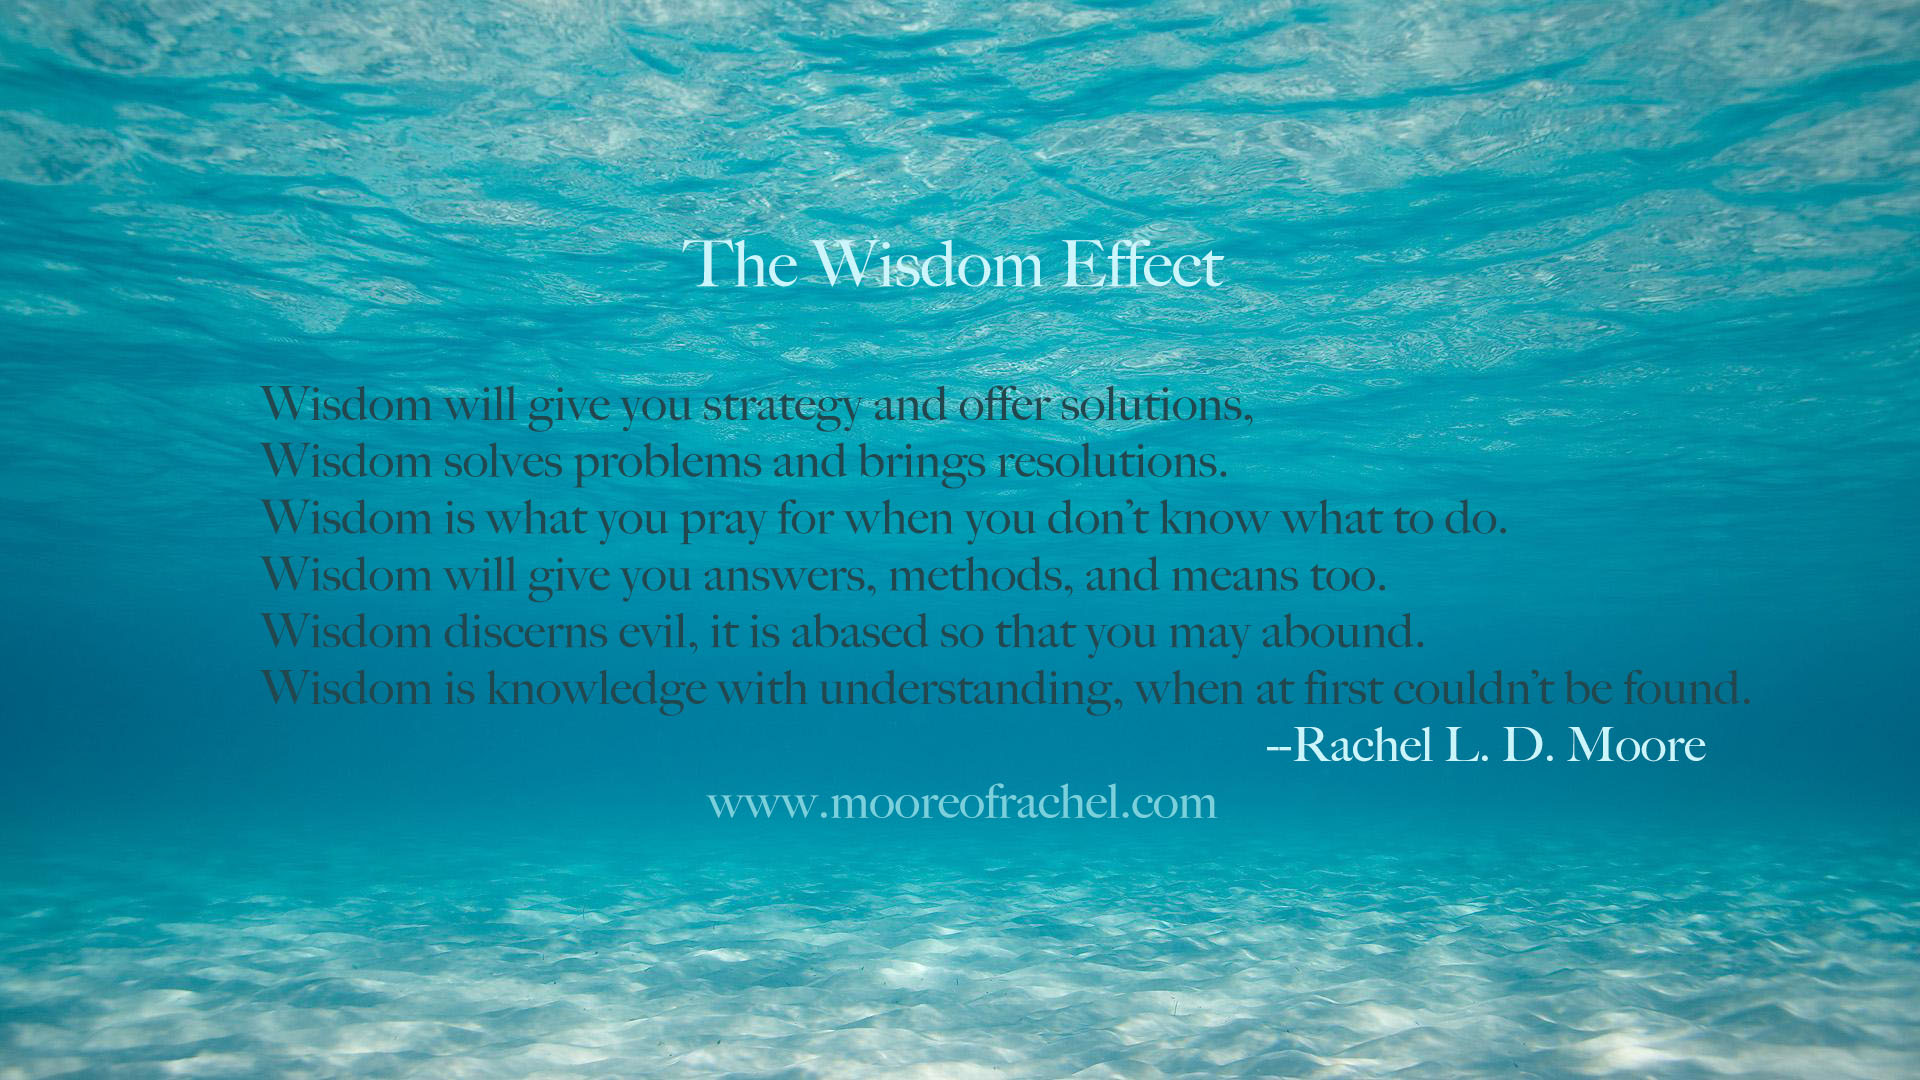 Wisdom Effect poem